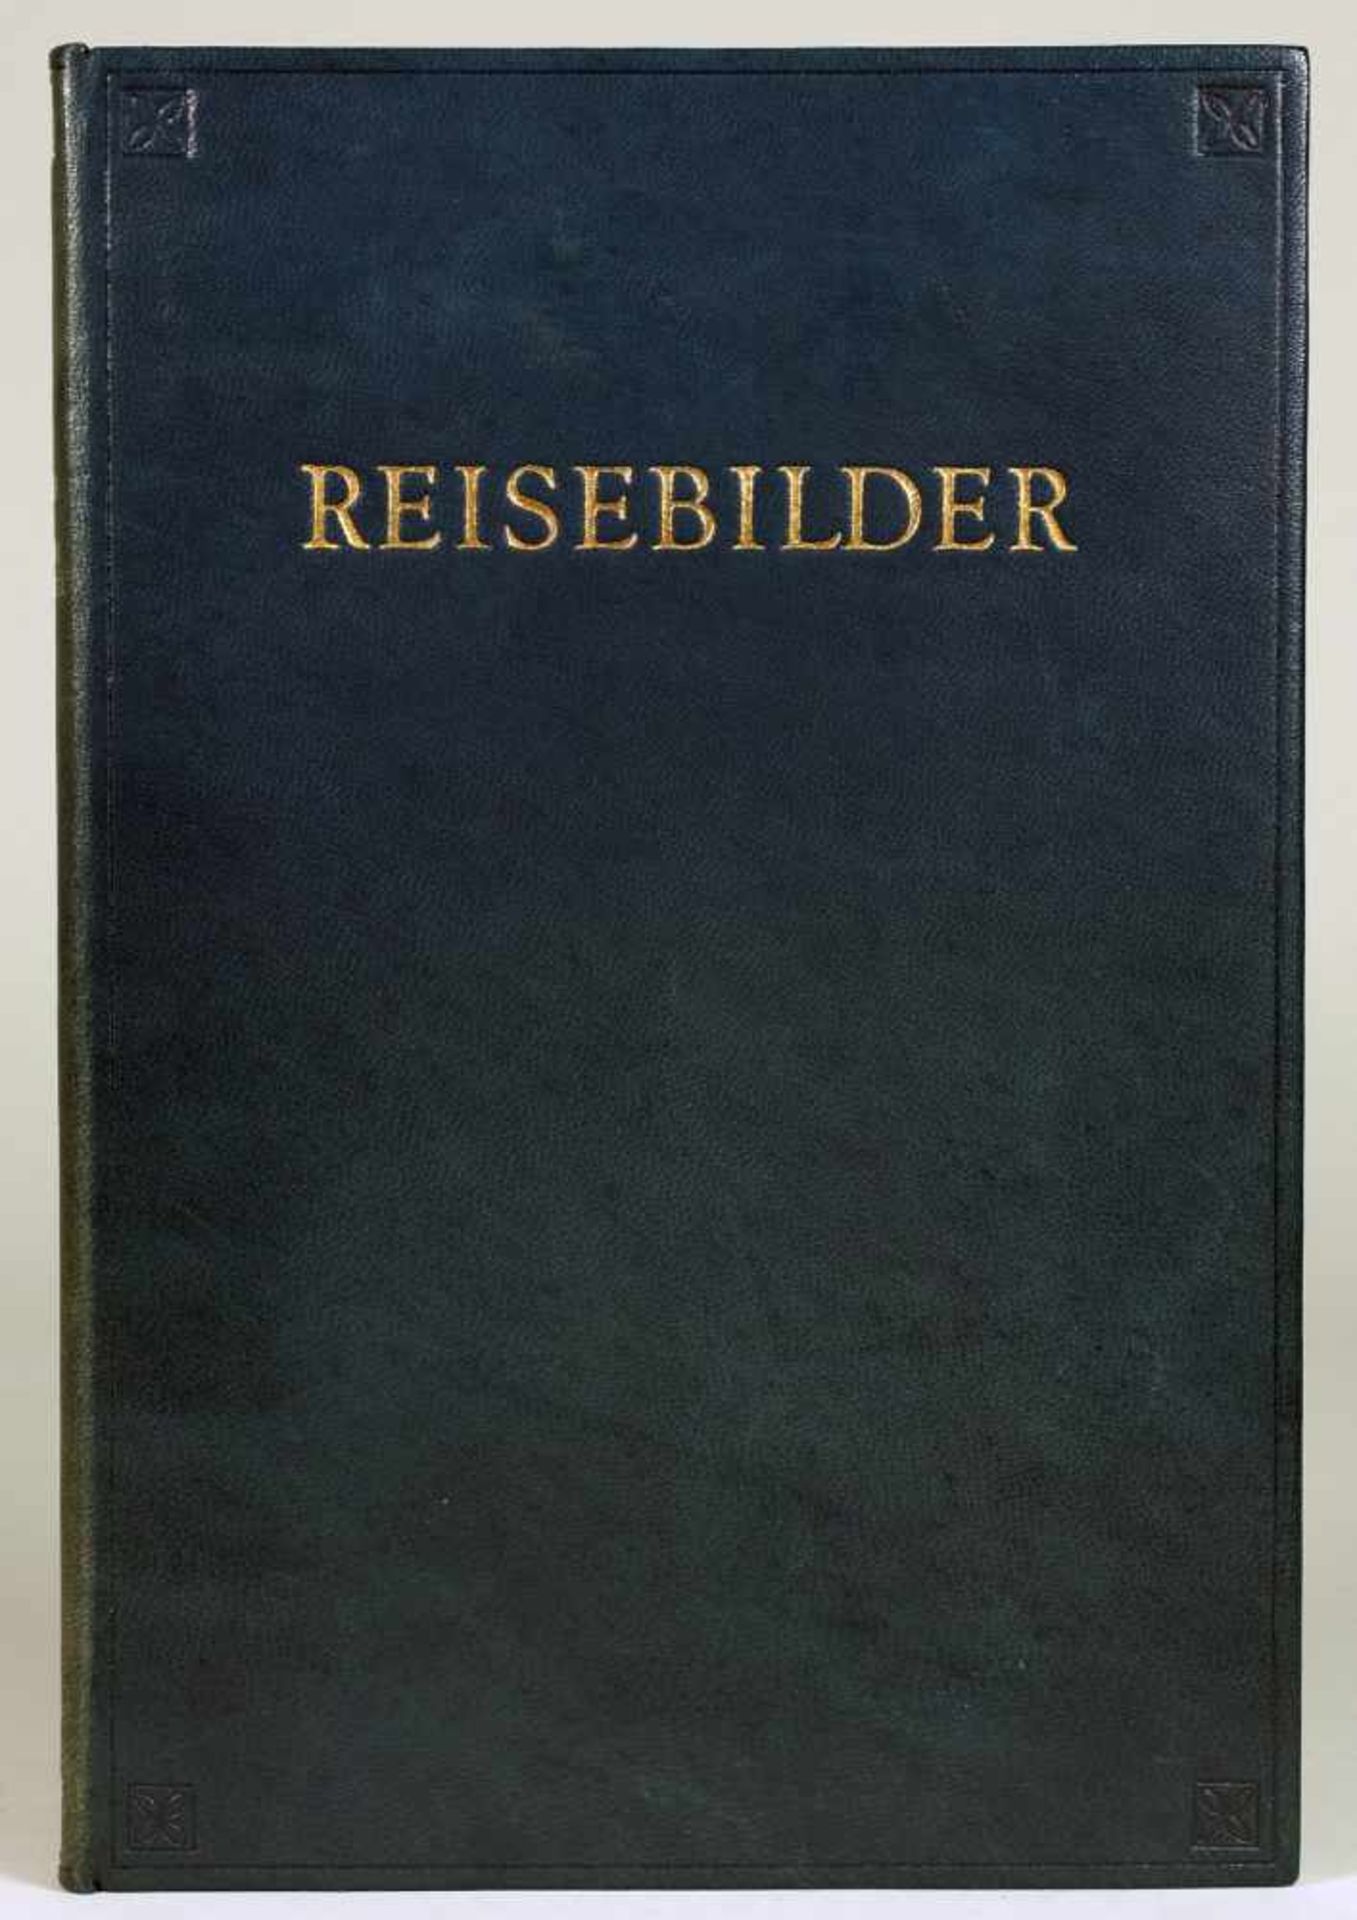 The Bear Press - Hugo von Hofmannsthal. Reisebilder. Farbholzschnitte von Hanns Studer. Bayreuth